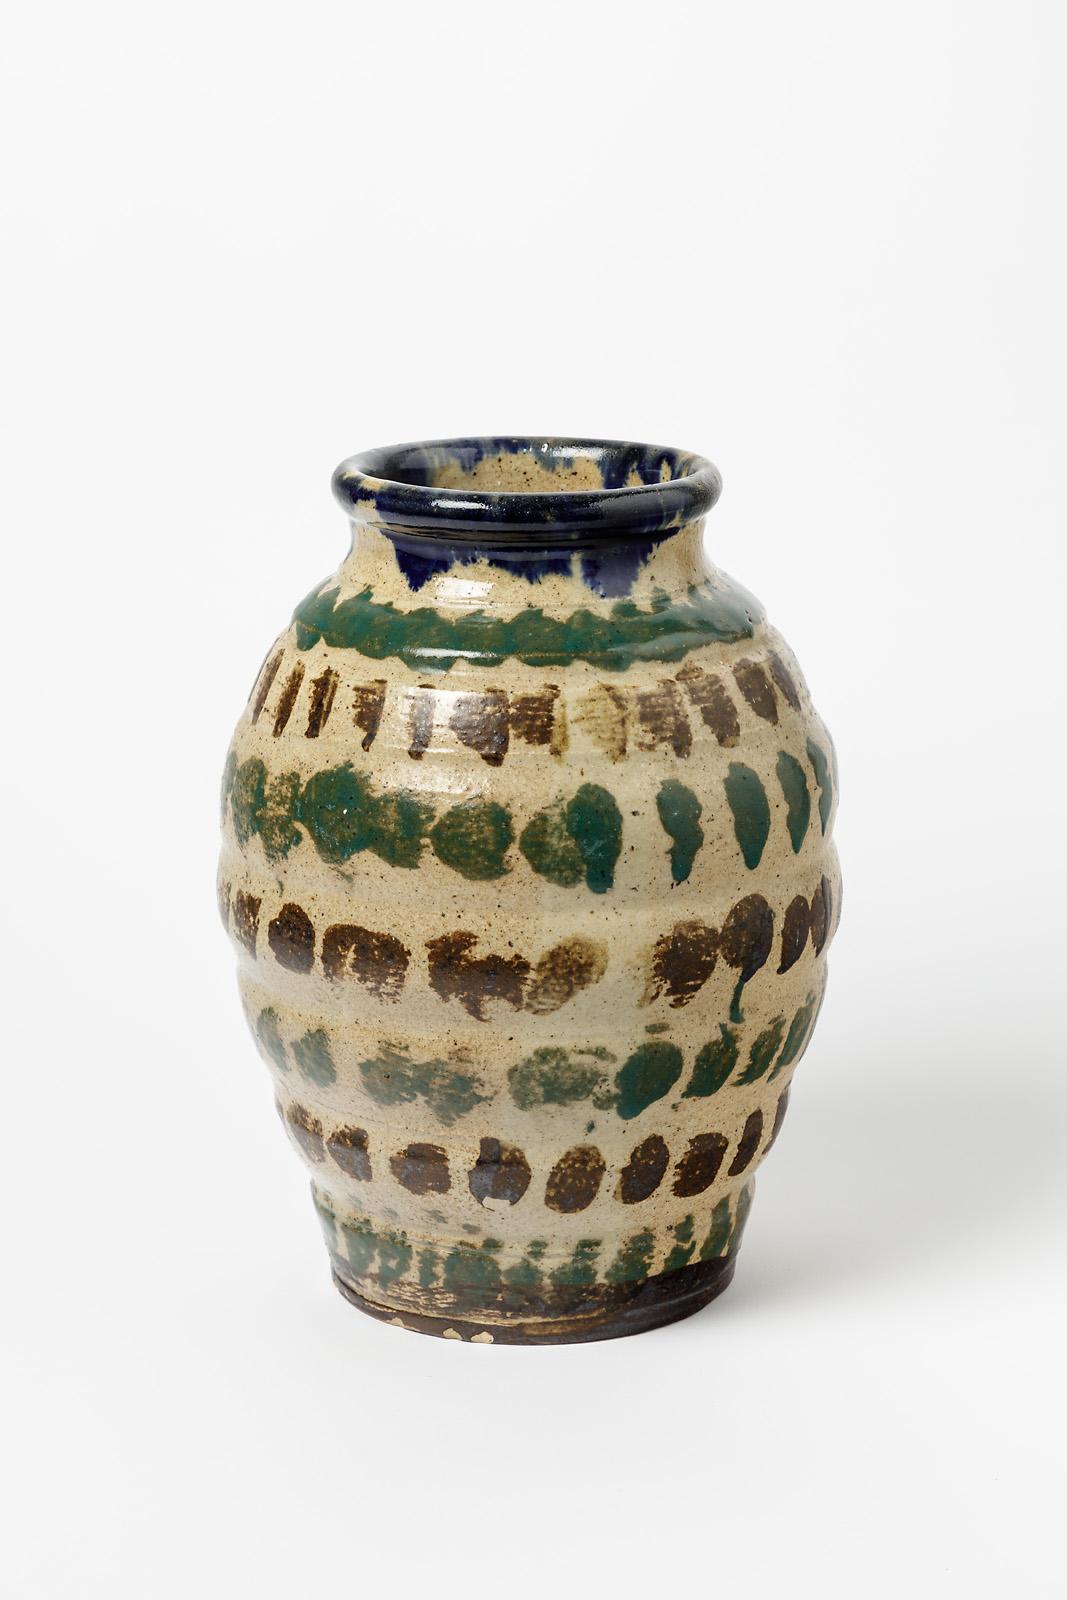 French 20th century art deco stoneware colored ceramic vase by Marius Bernon La Borne